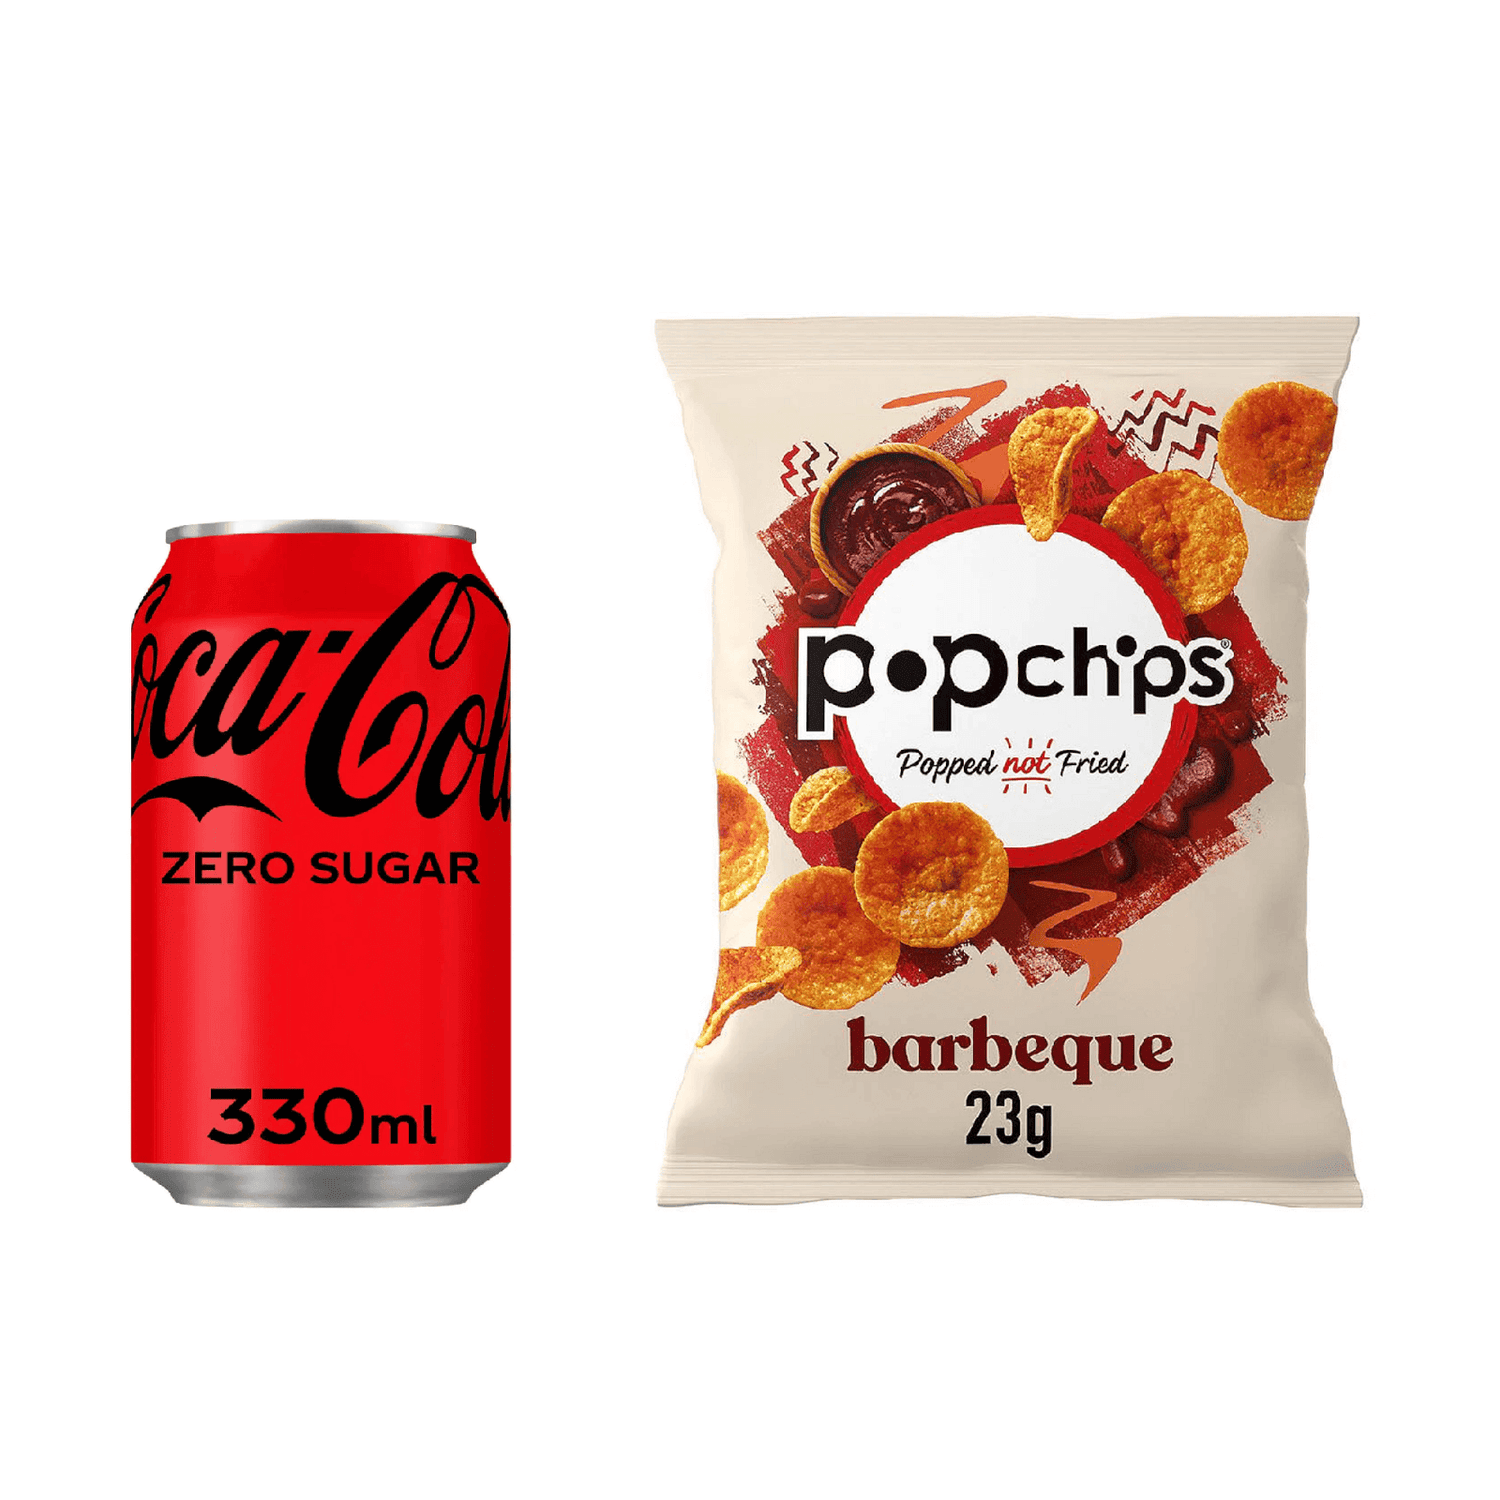 Coca-Cola Zero Sugar & Popchips Bundle